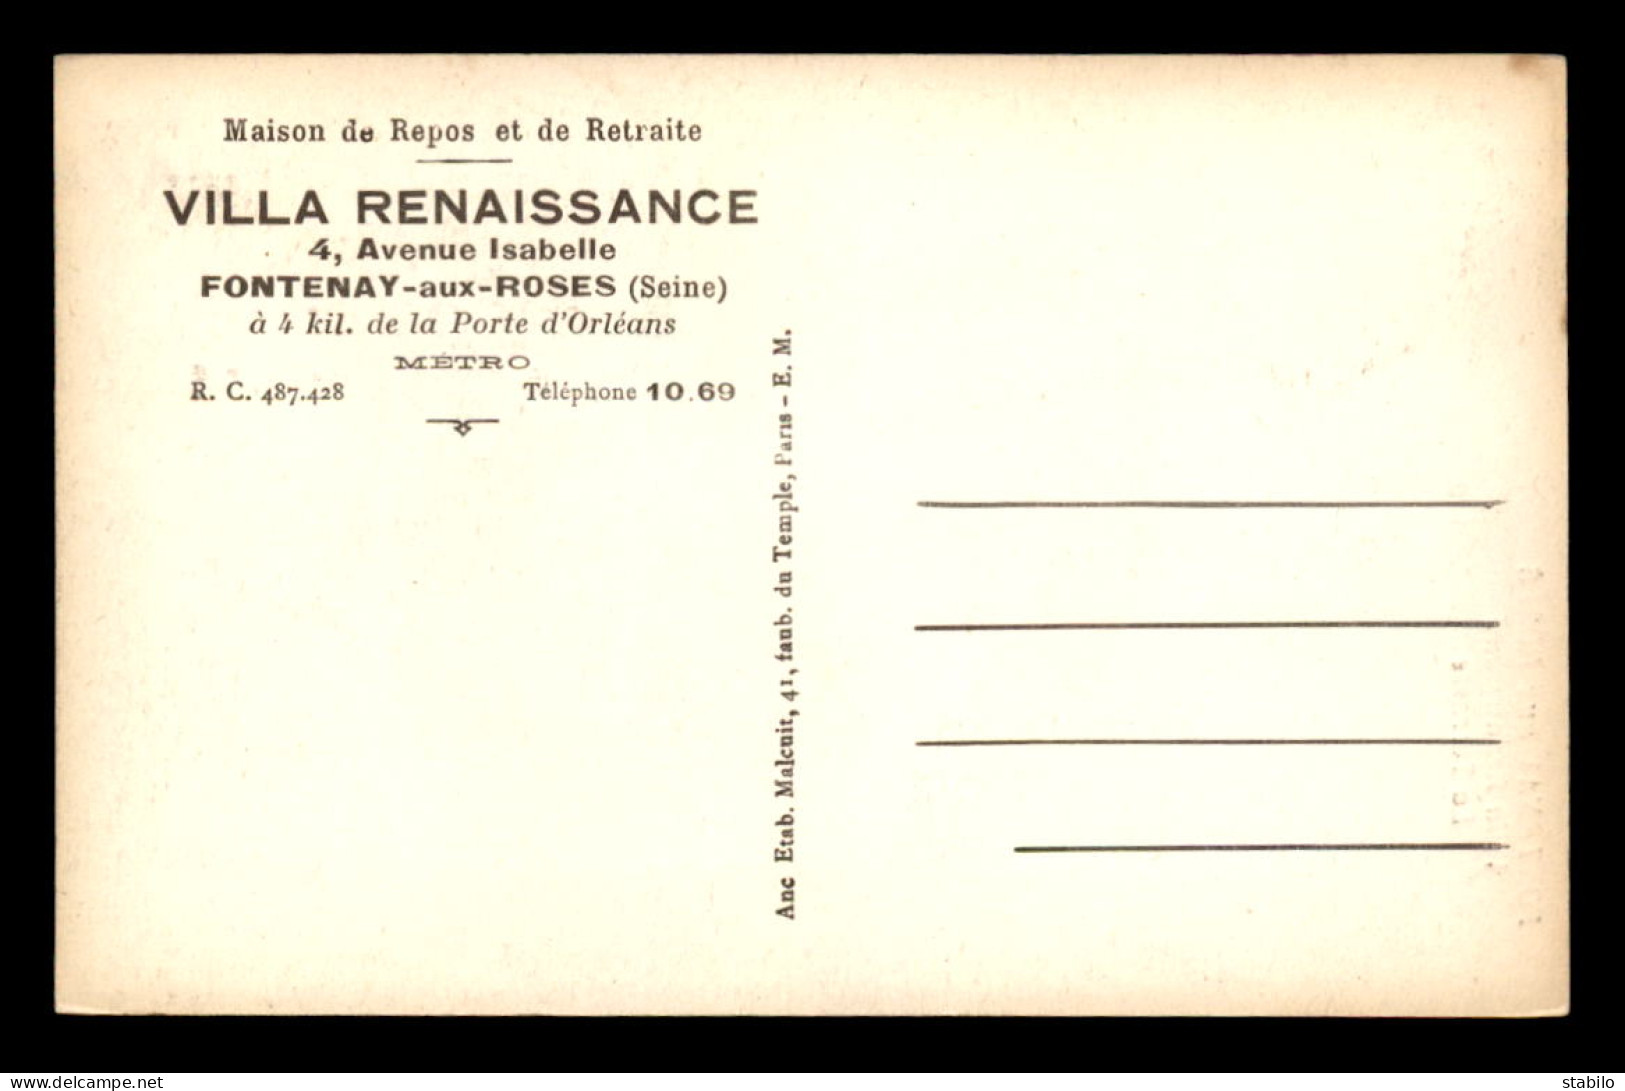 92 - FONTENAY-AUX-ROSES - MAISON DE REPOS, VILLA RENAISSANCE, 4 AVENUE ISABELLE - LA TERRASSE - Fontenay Aux Roses